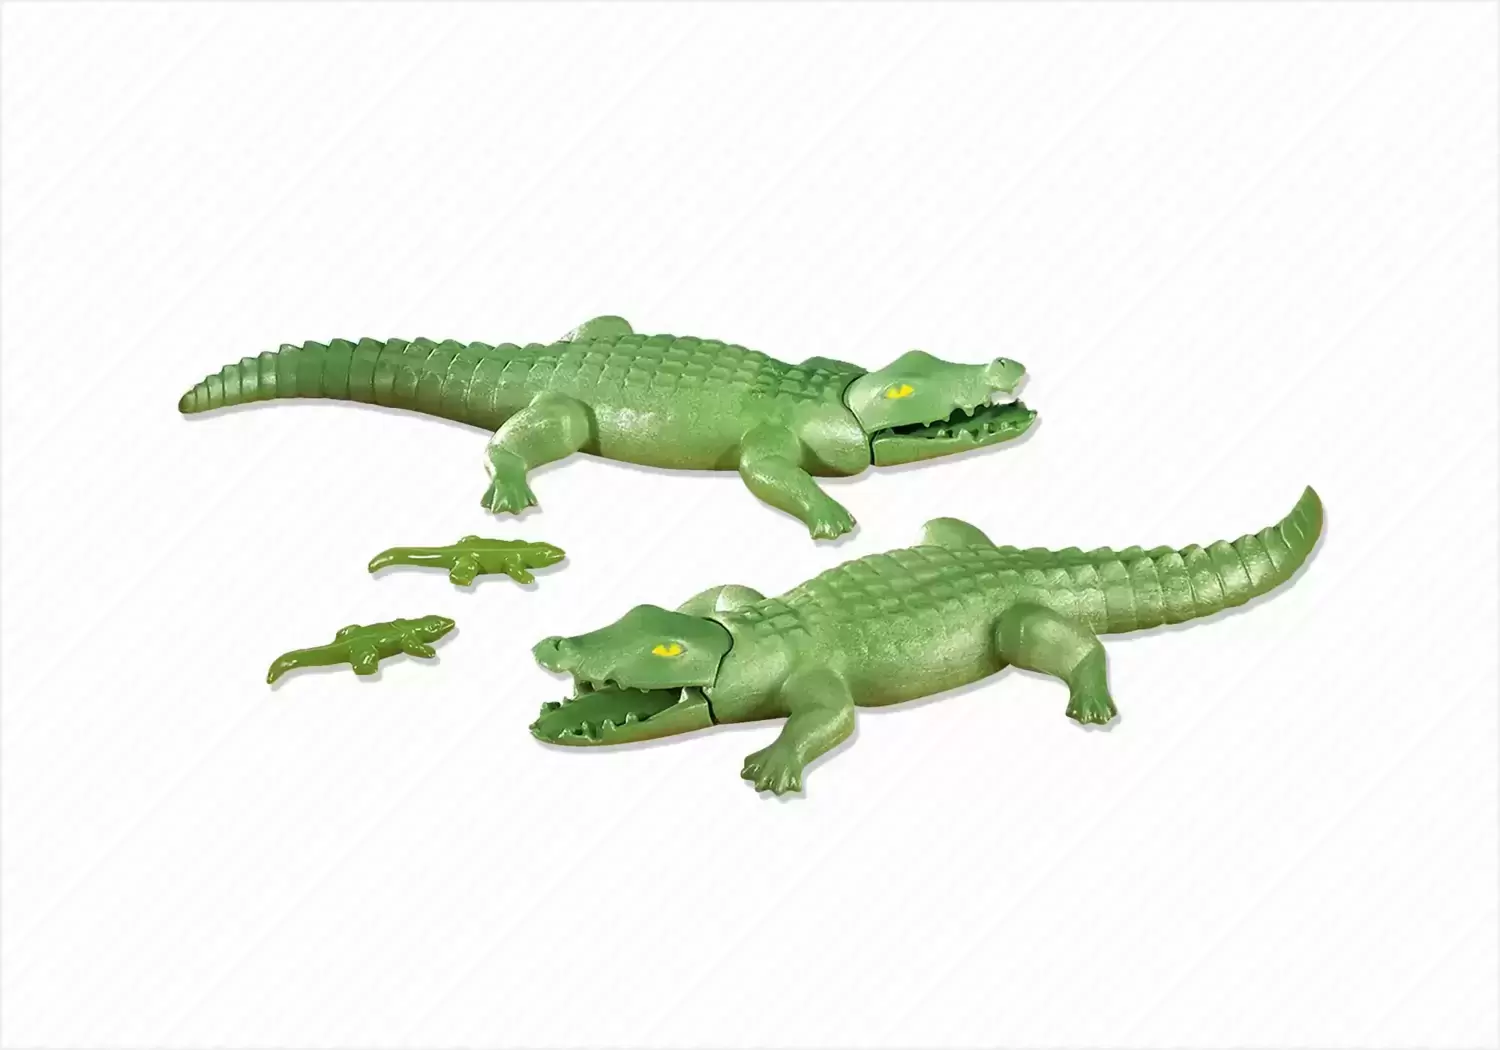 Plamobil Animal Sets - 2 Large Alligators with 2 Small Alligators